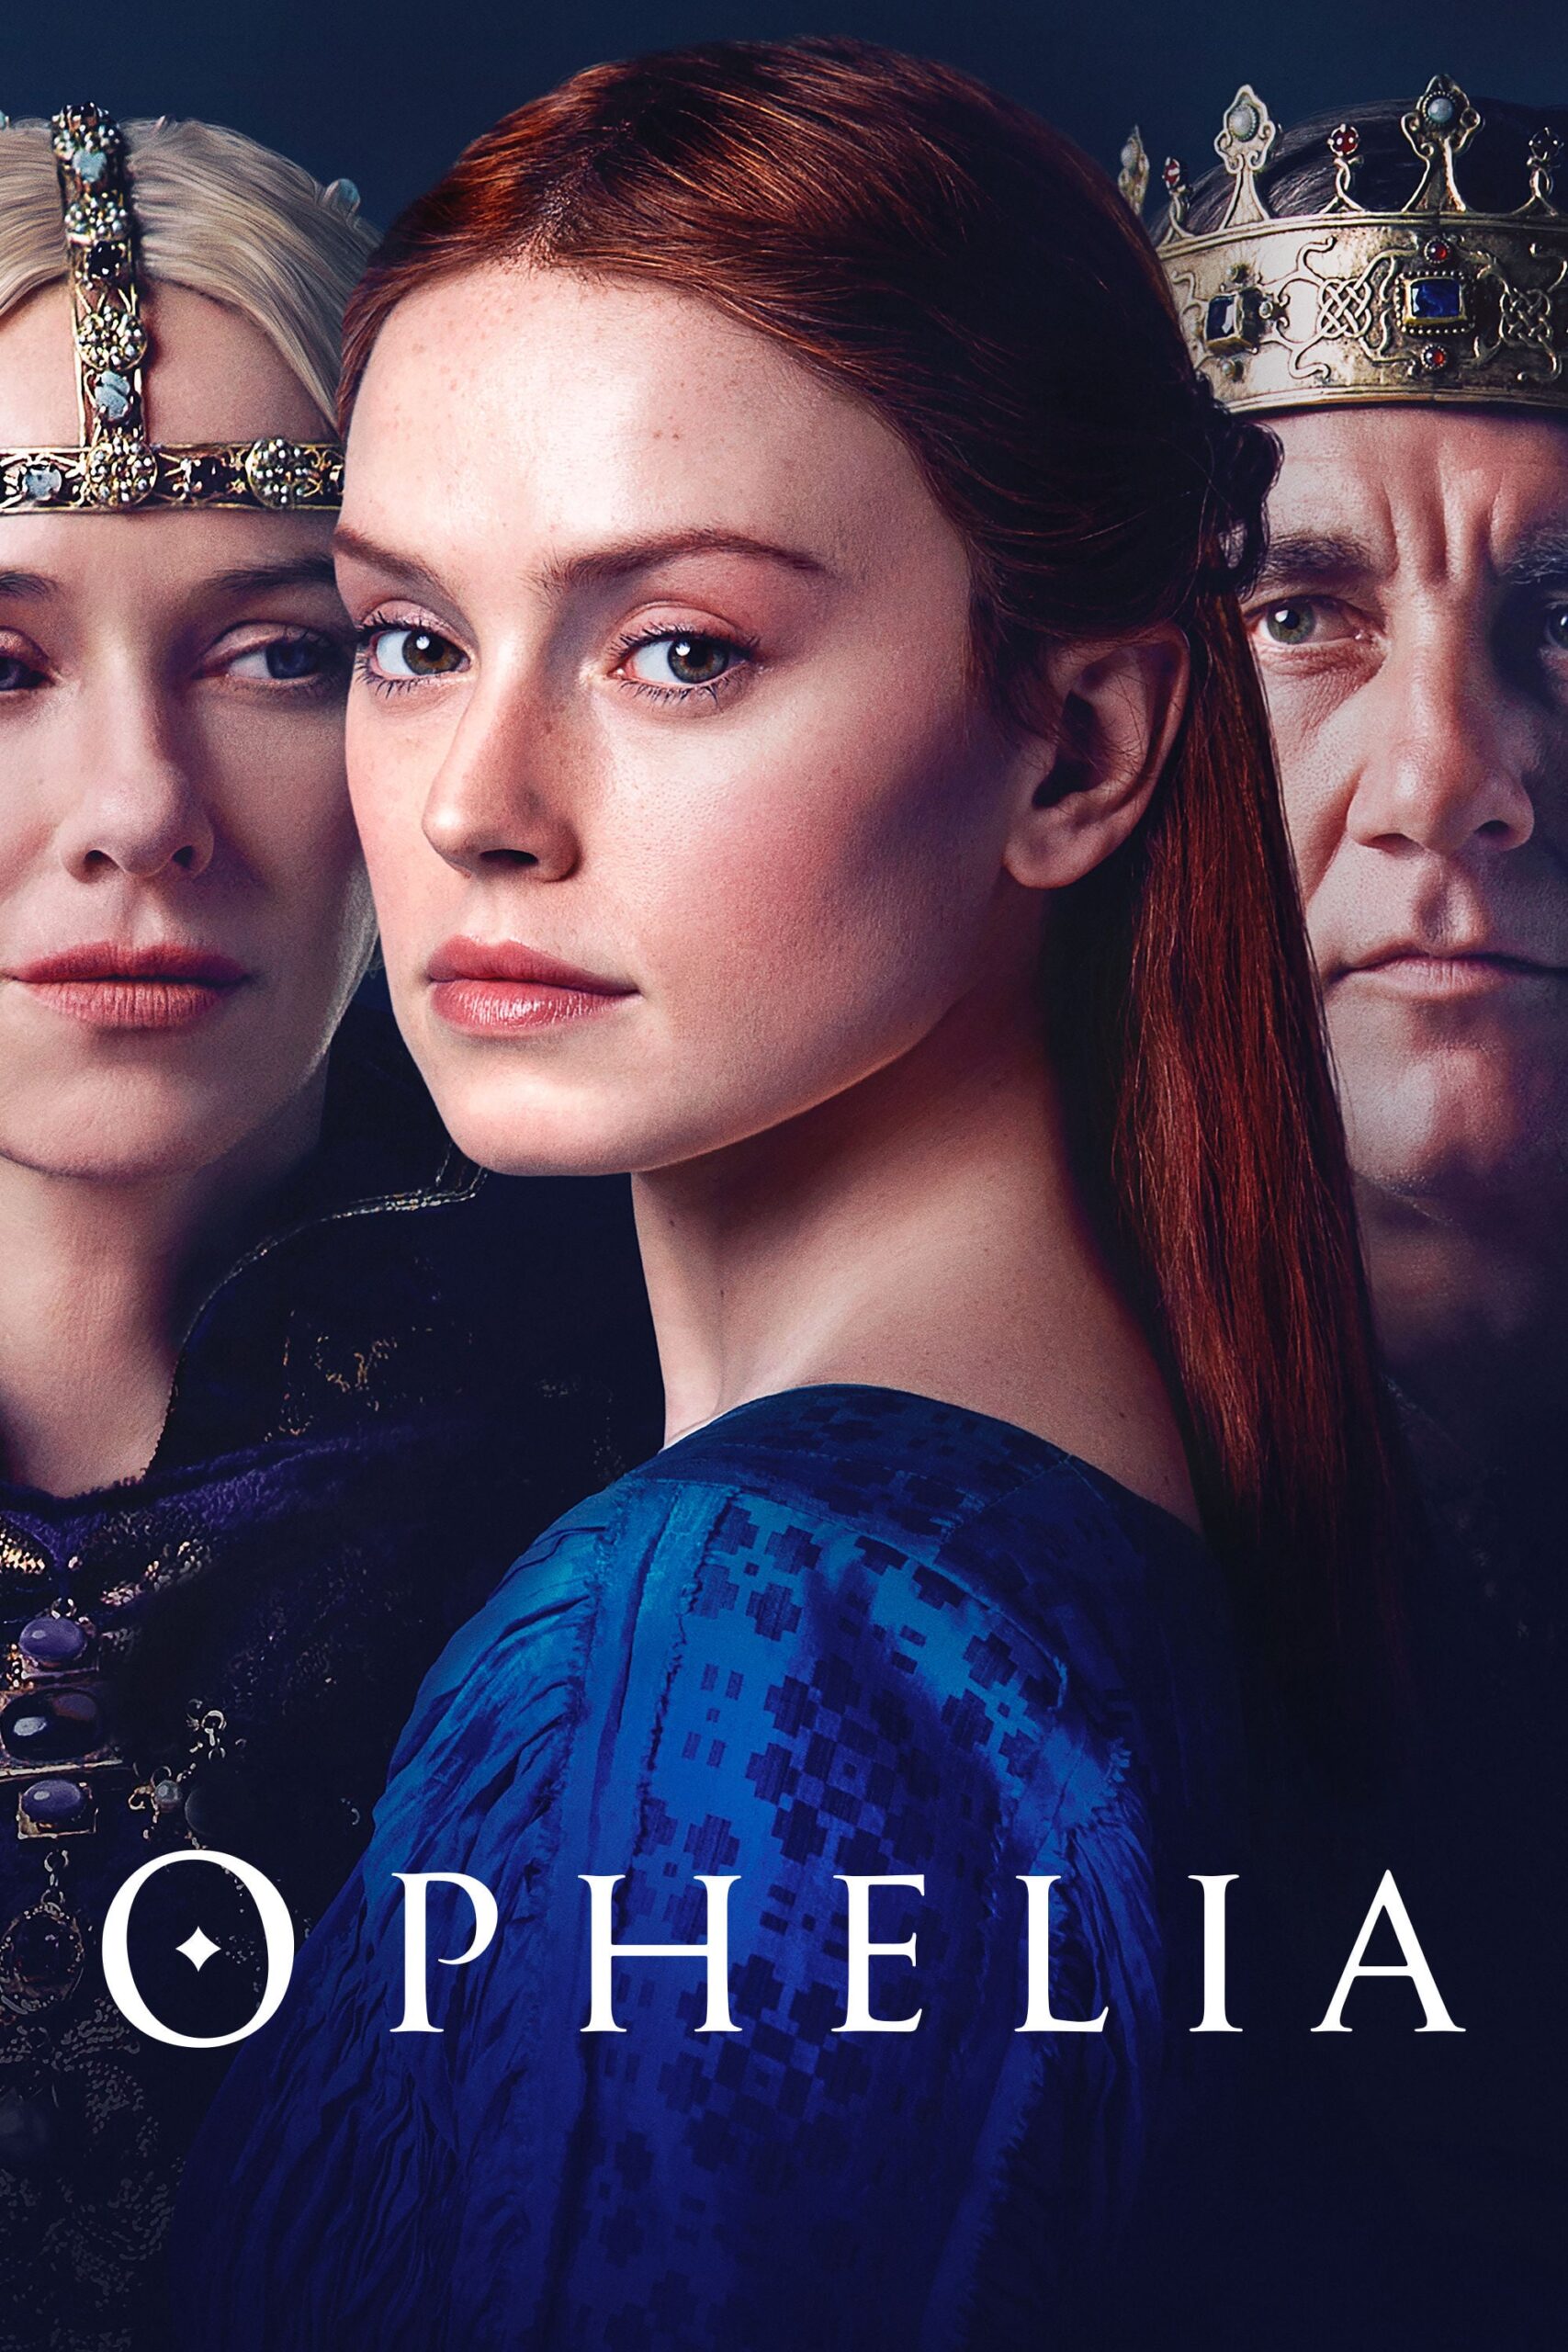 دانلود فیلم Ophelia 2019